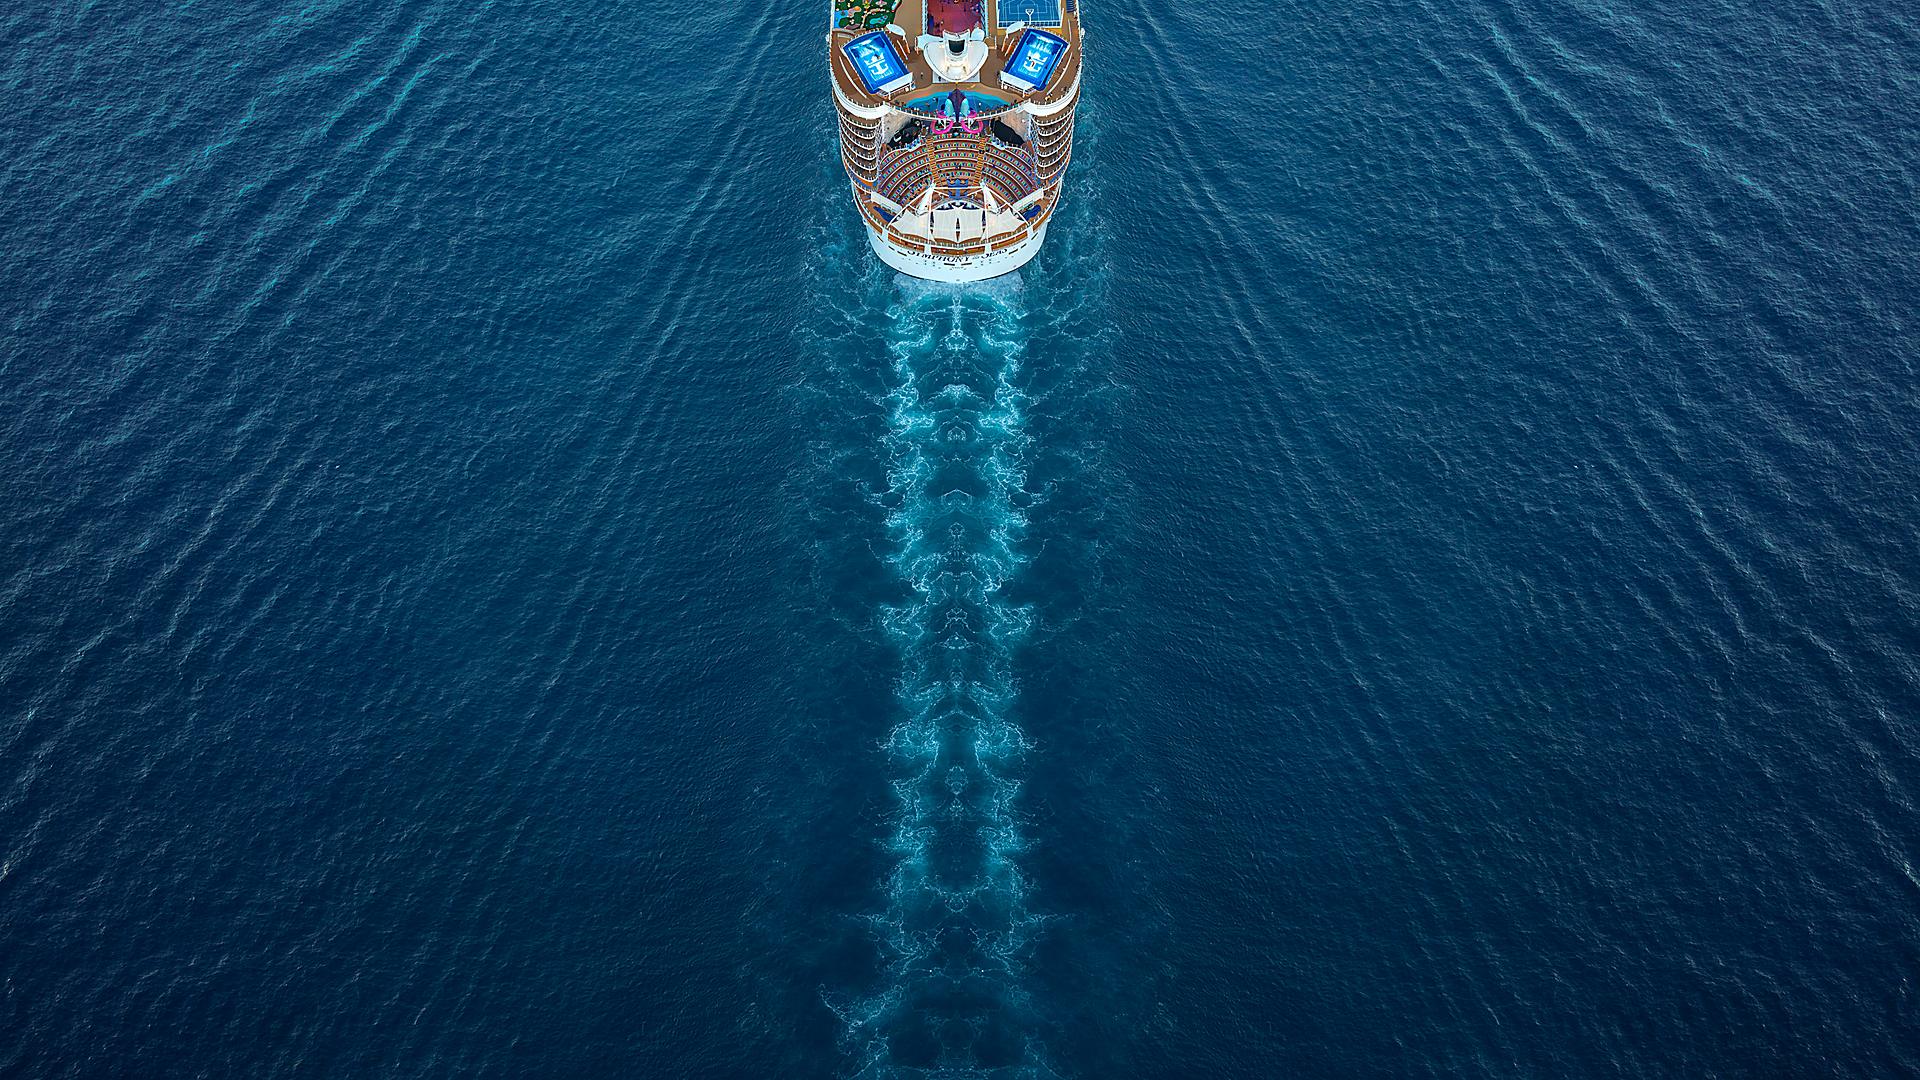 Risveglio in acqua sulla Symphony of the Seas